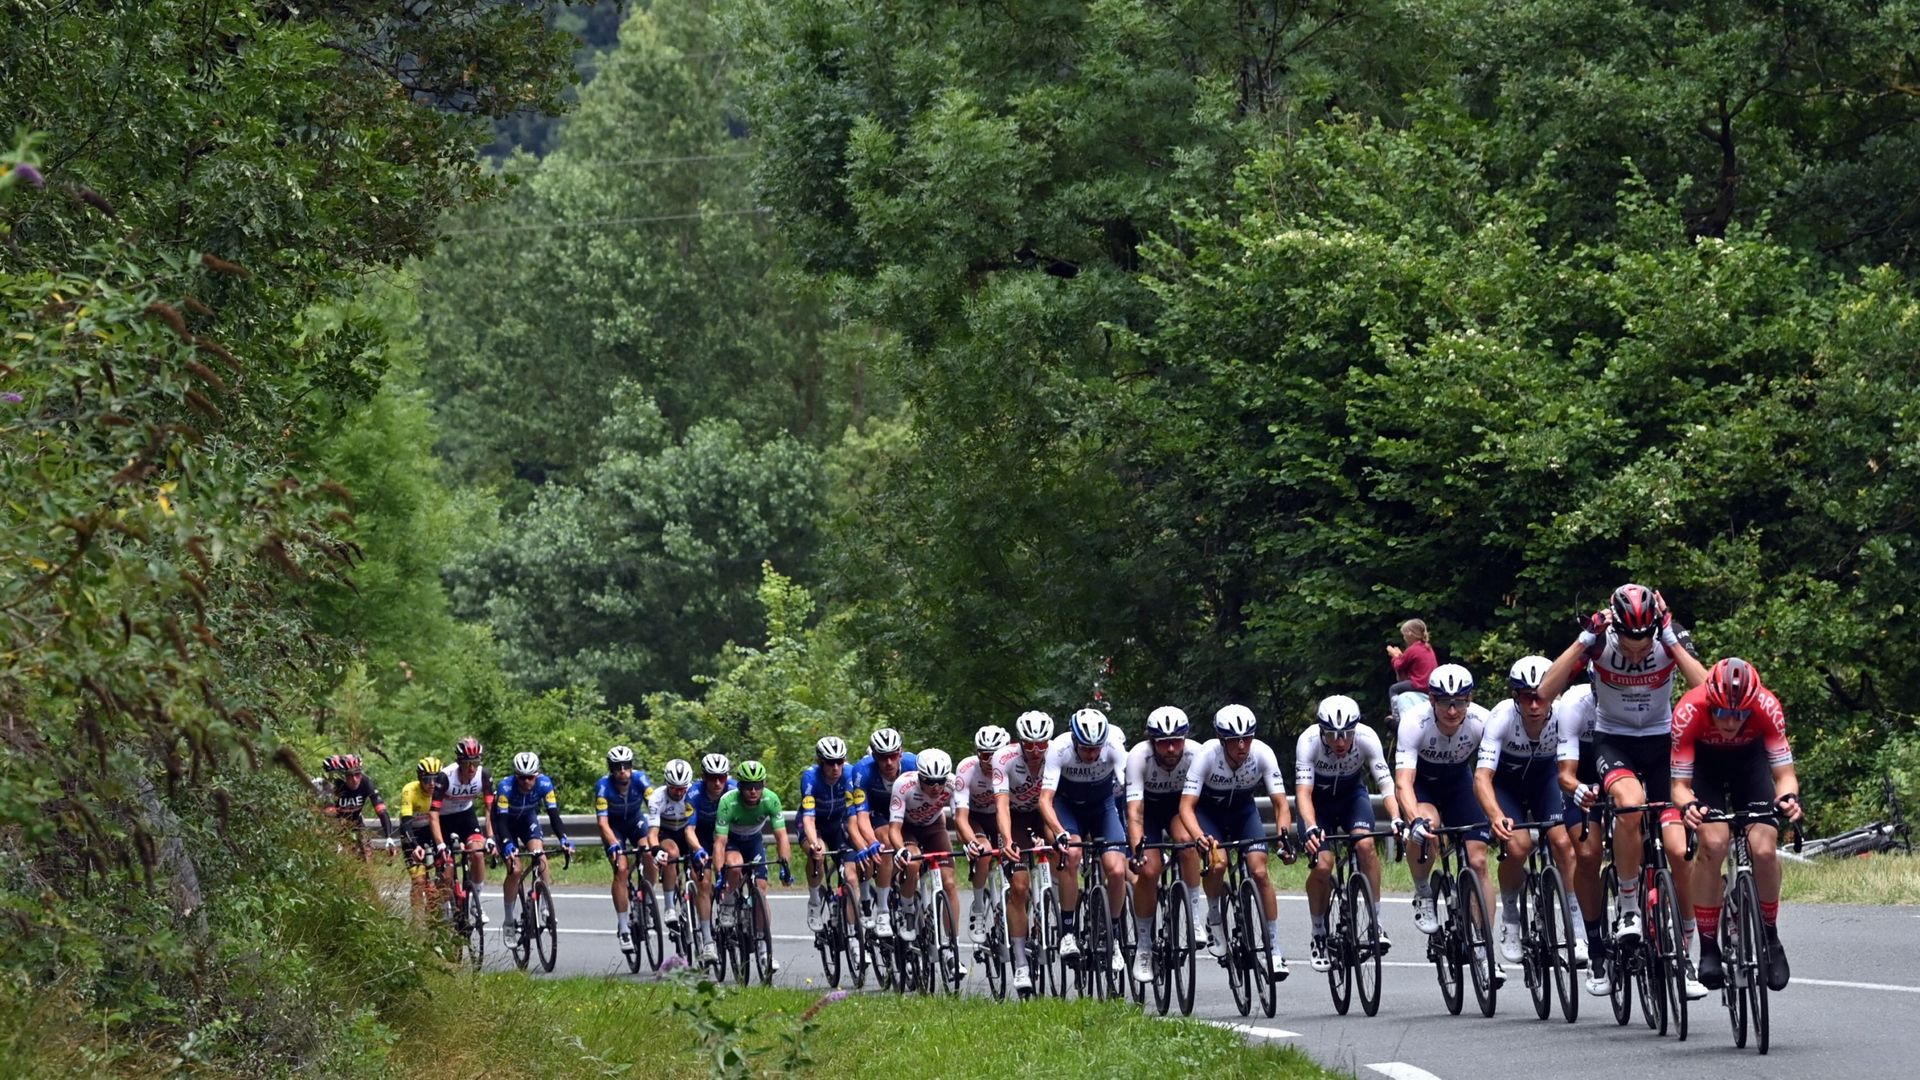 Le peloton sur les routes du Tour de France en 2021.